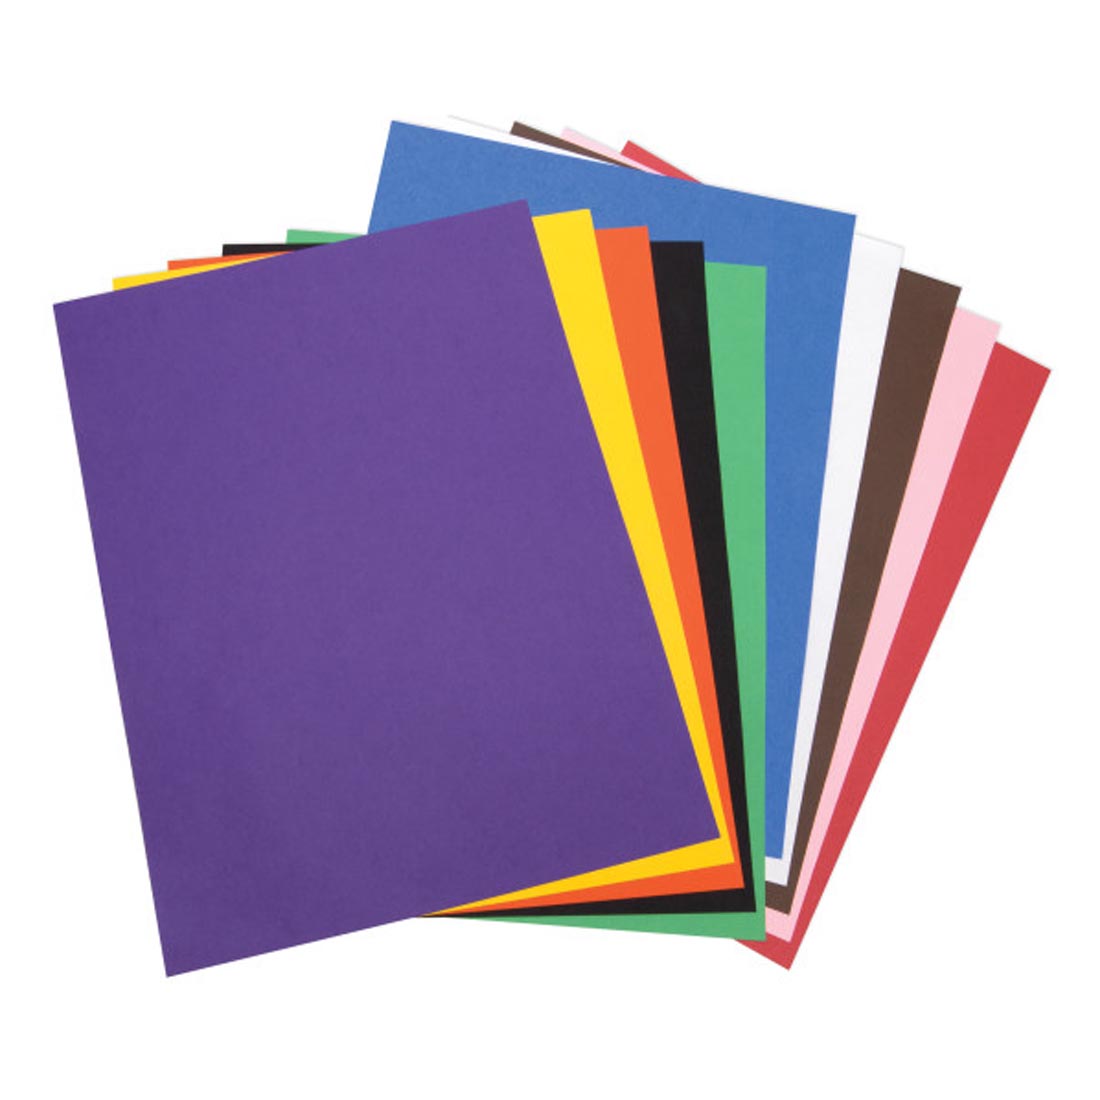 Tru-Ray Construction Paper 18x24" Classic Colors Assortment